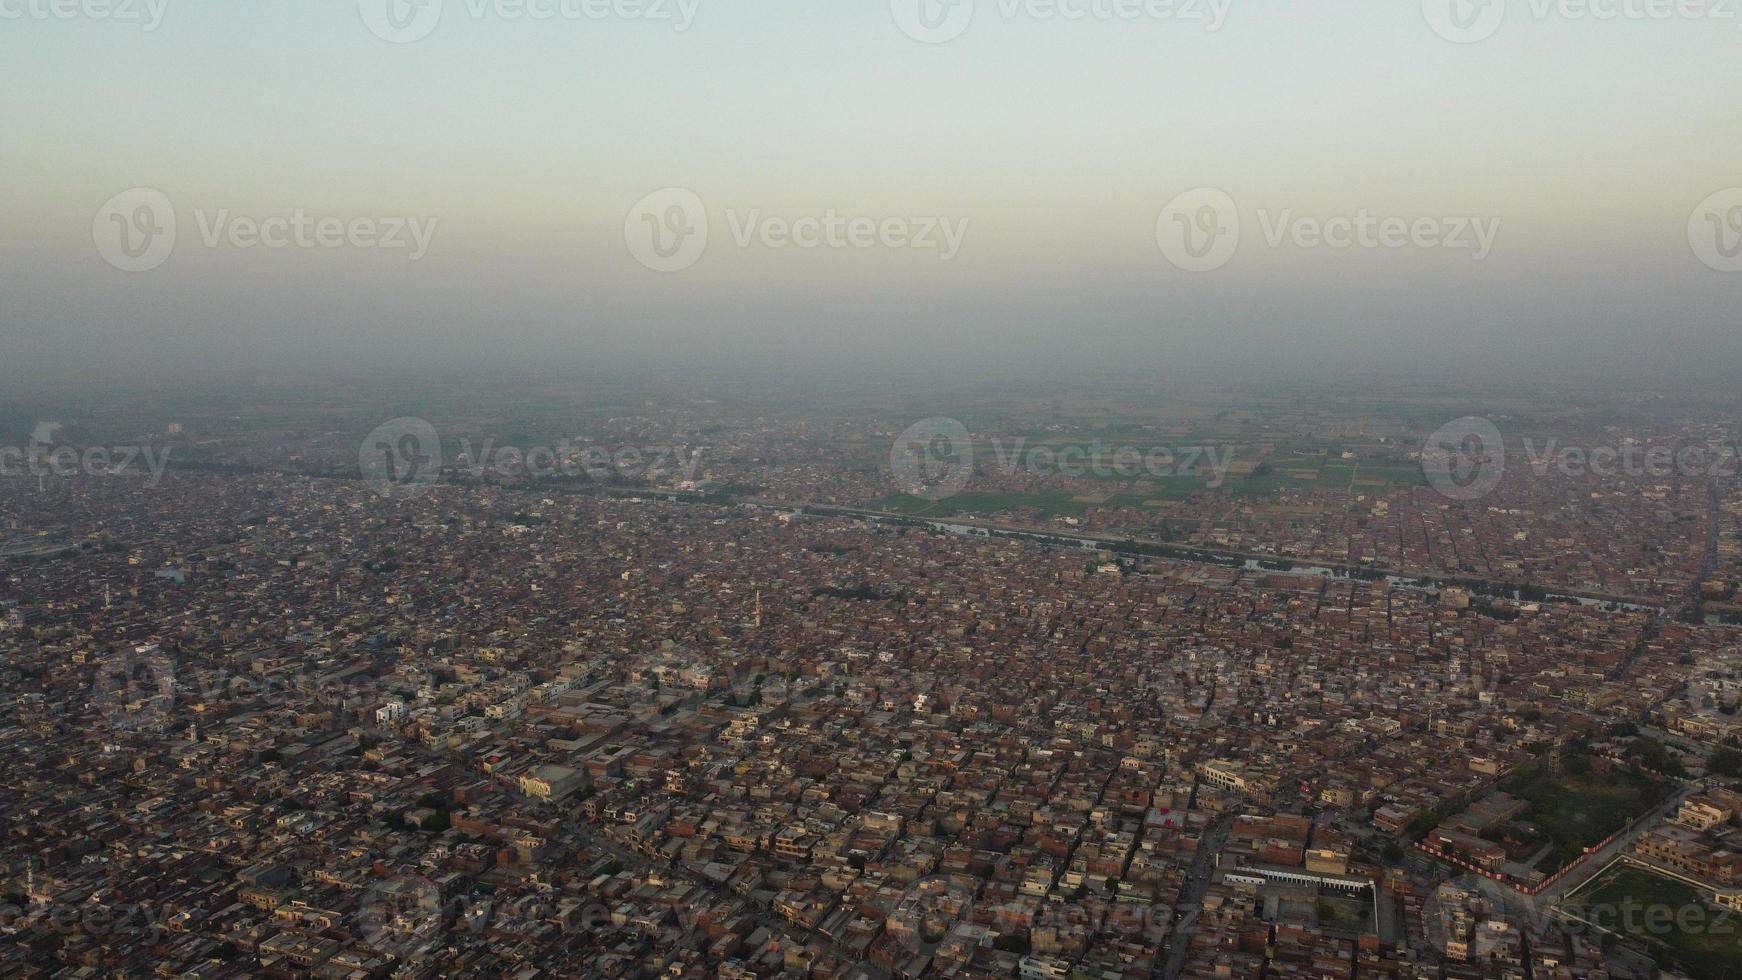 hög vinkel utsikt över gujranwala stad och bostadshus vid överbelastad antenn av punjab pakistan foto